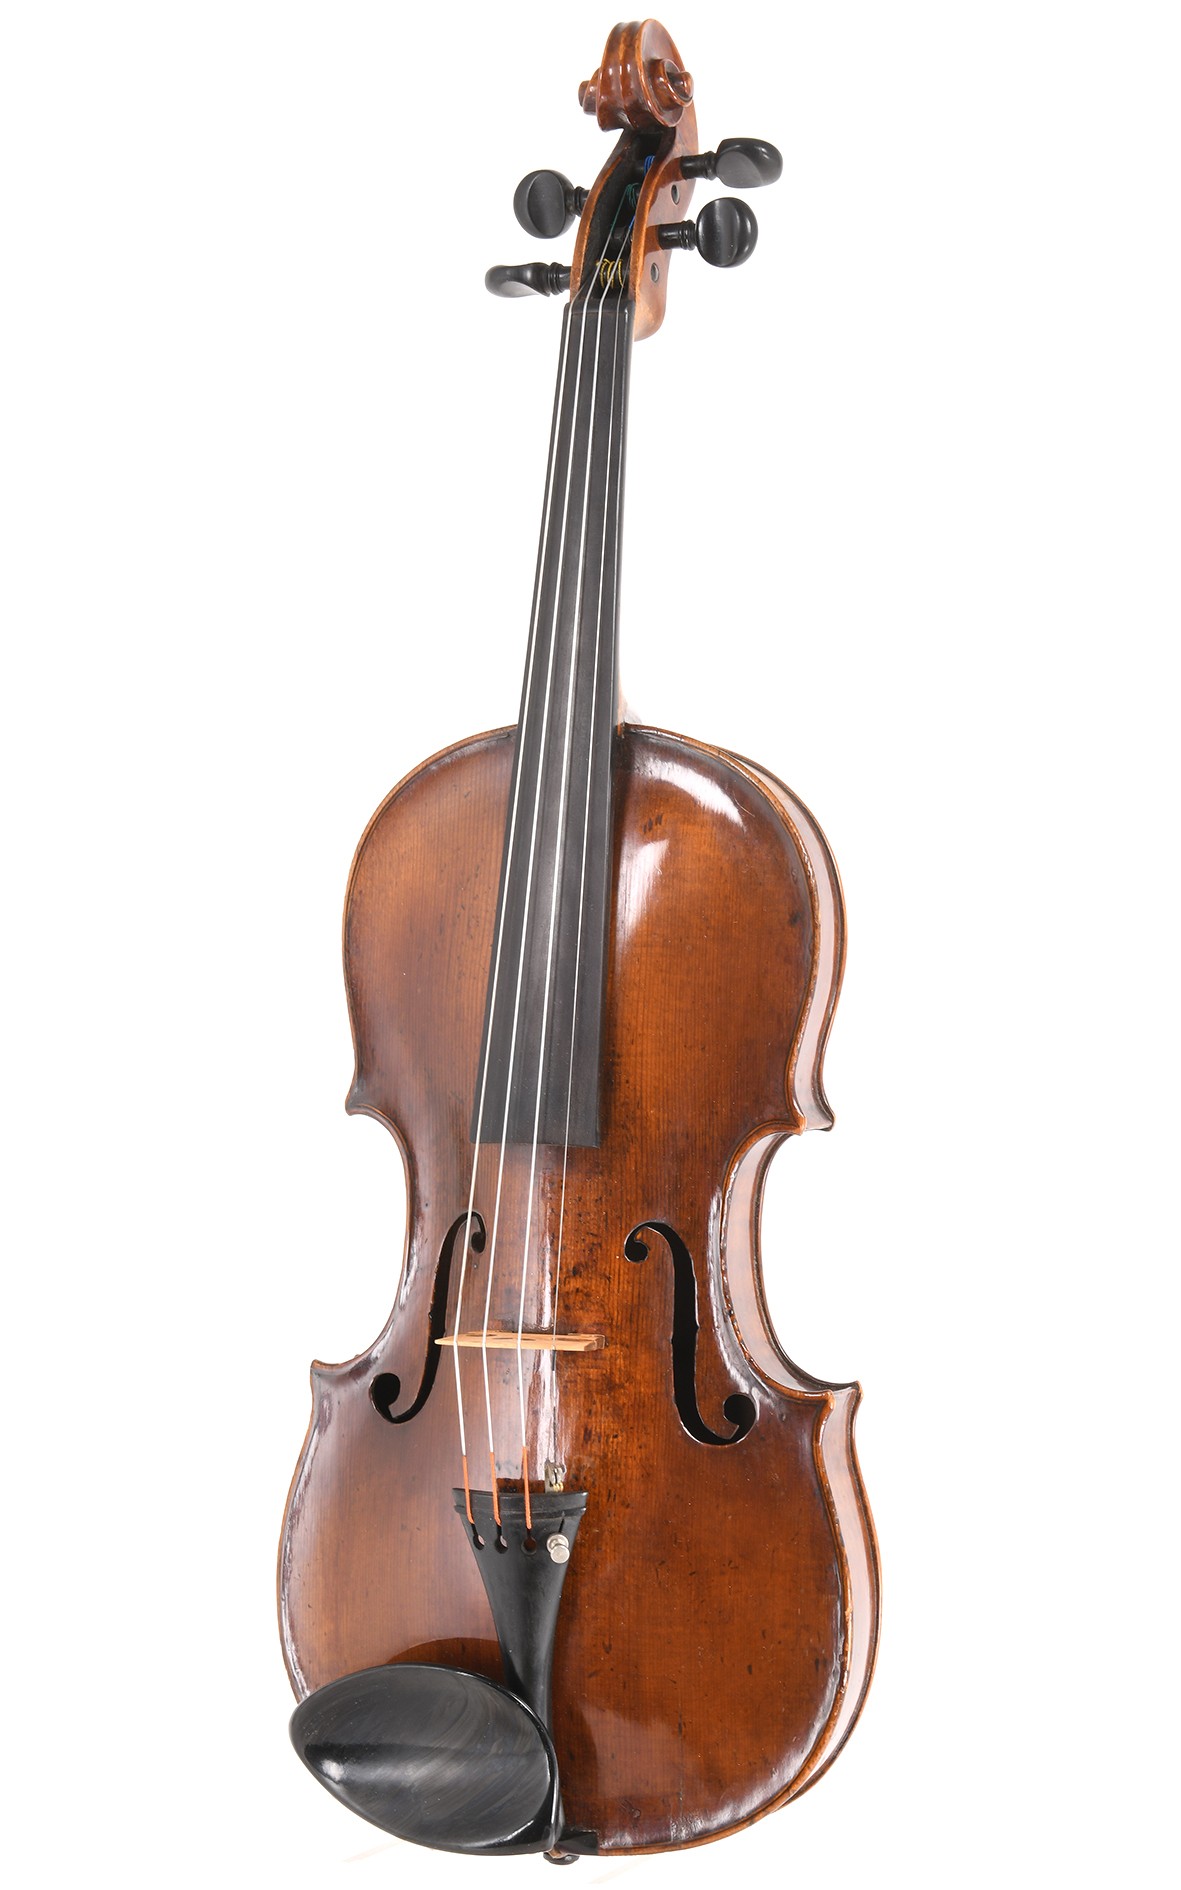 Historic master violin from the Vogtland region, circa 1800